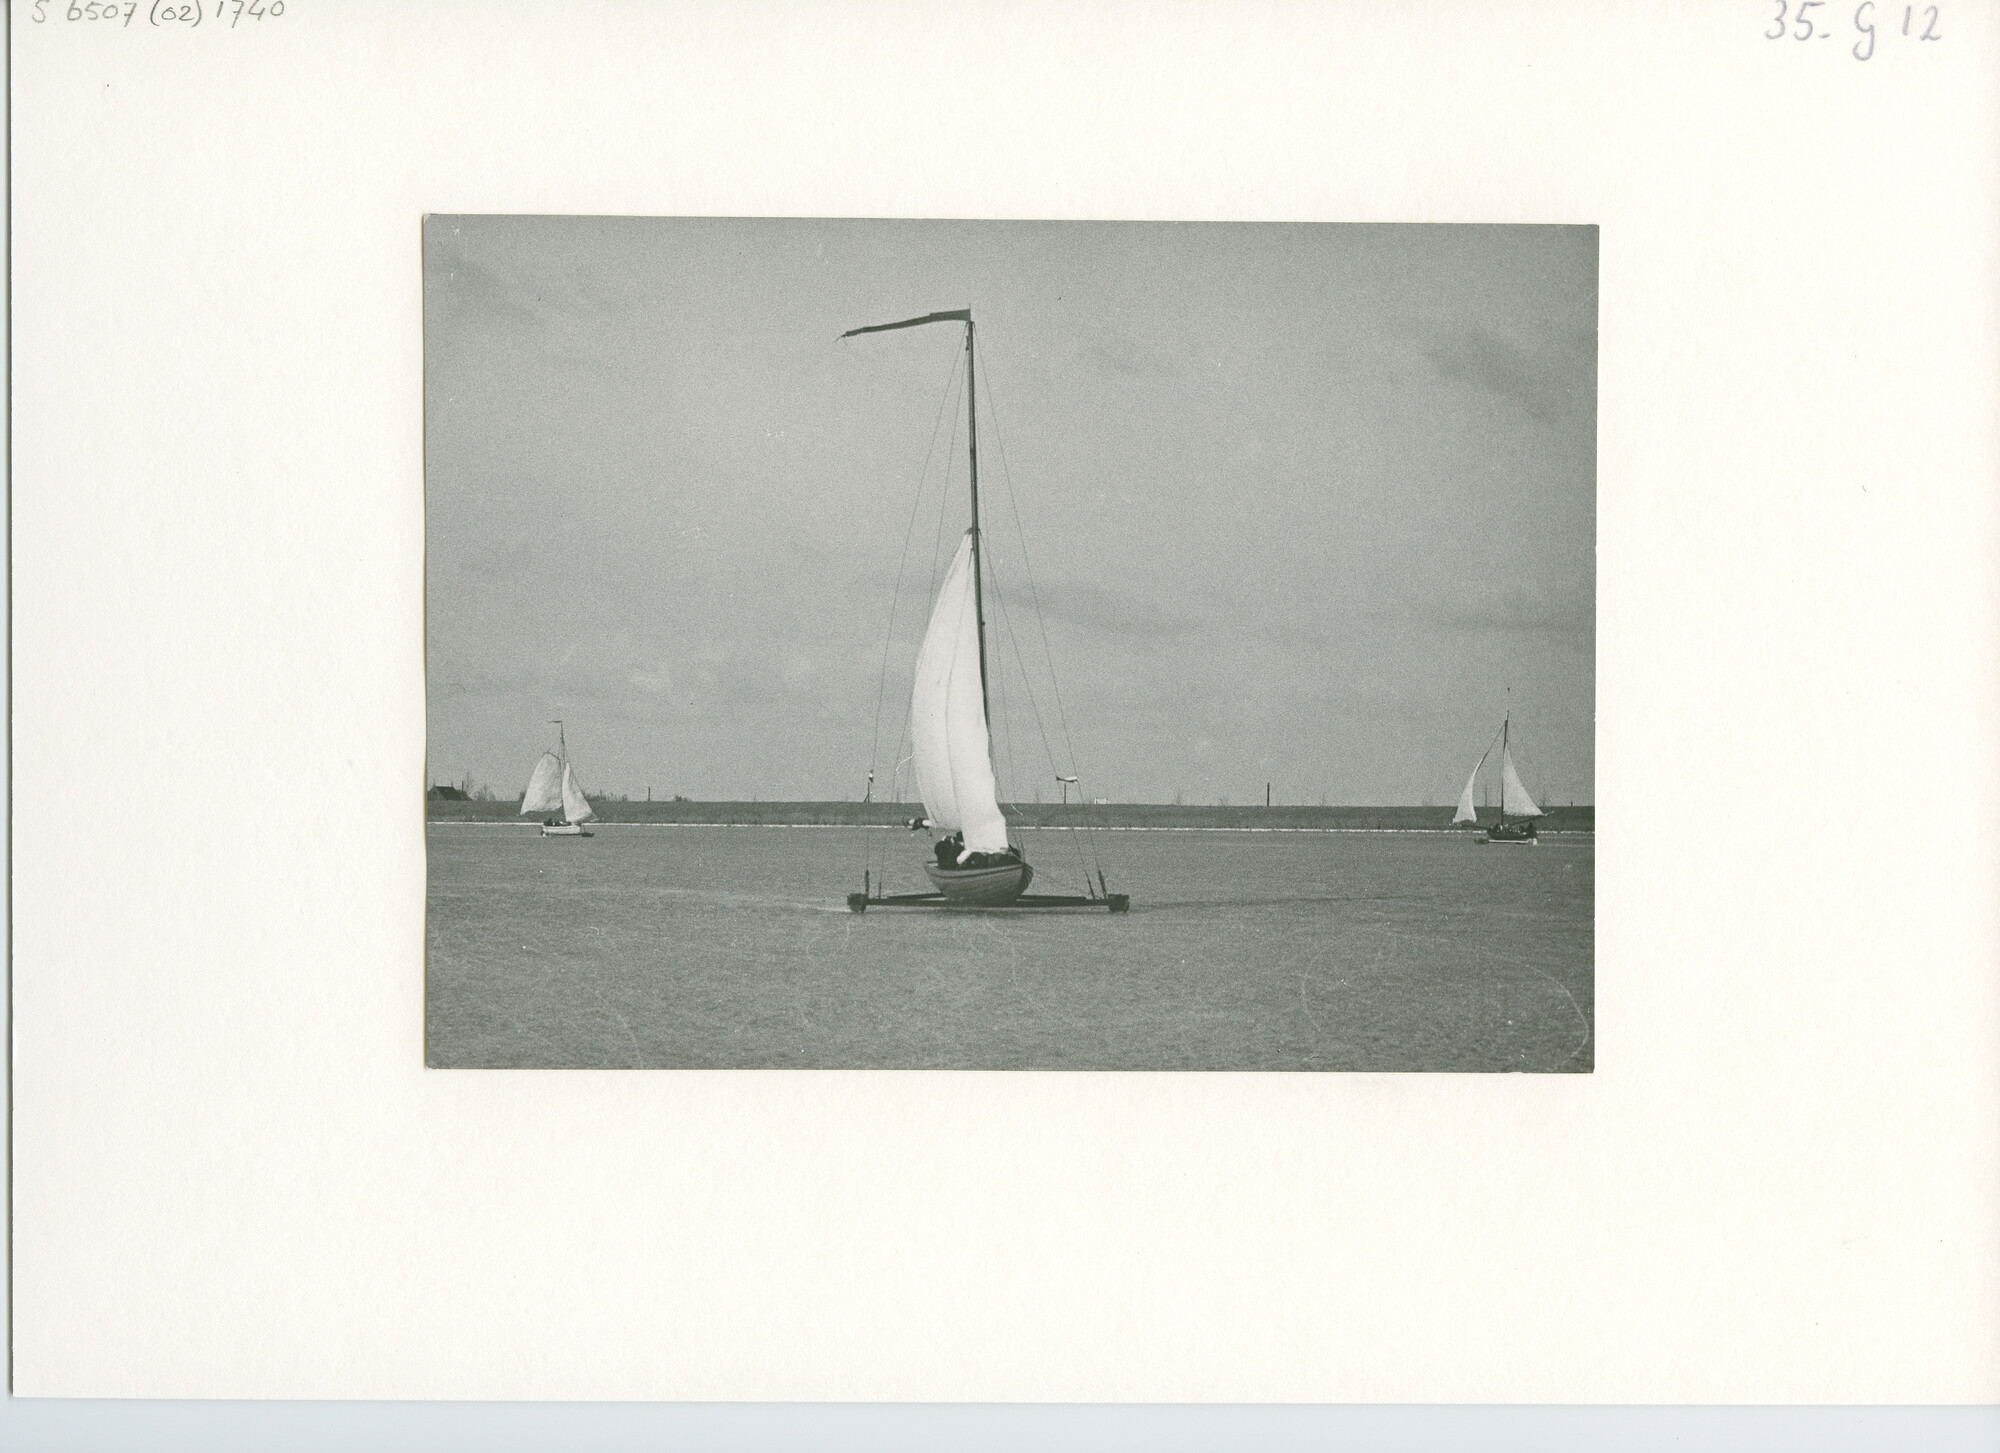 S.6507(02)1740.02; Zwart-wit foto van oud-Hollandse ijszeilboten op de Gouwzee voor Monnickendam; foto